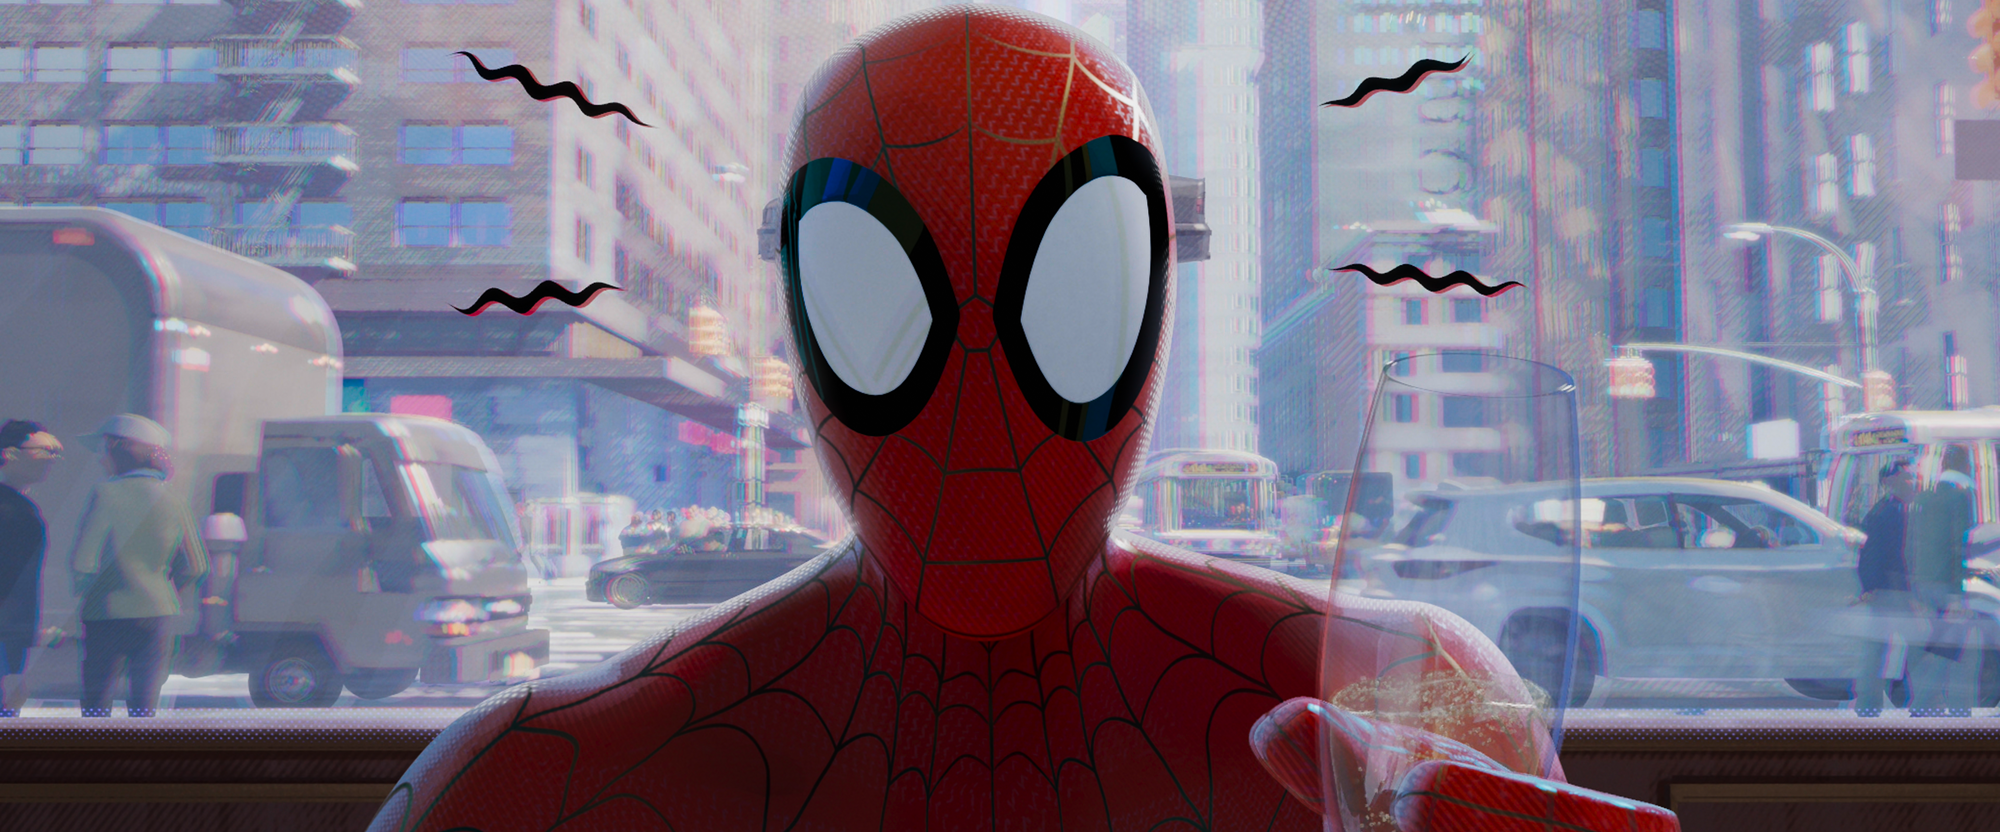 General 2000x832 Spider-Man: Into the Spider-Verse movies Spider-Man CGI film stills